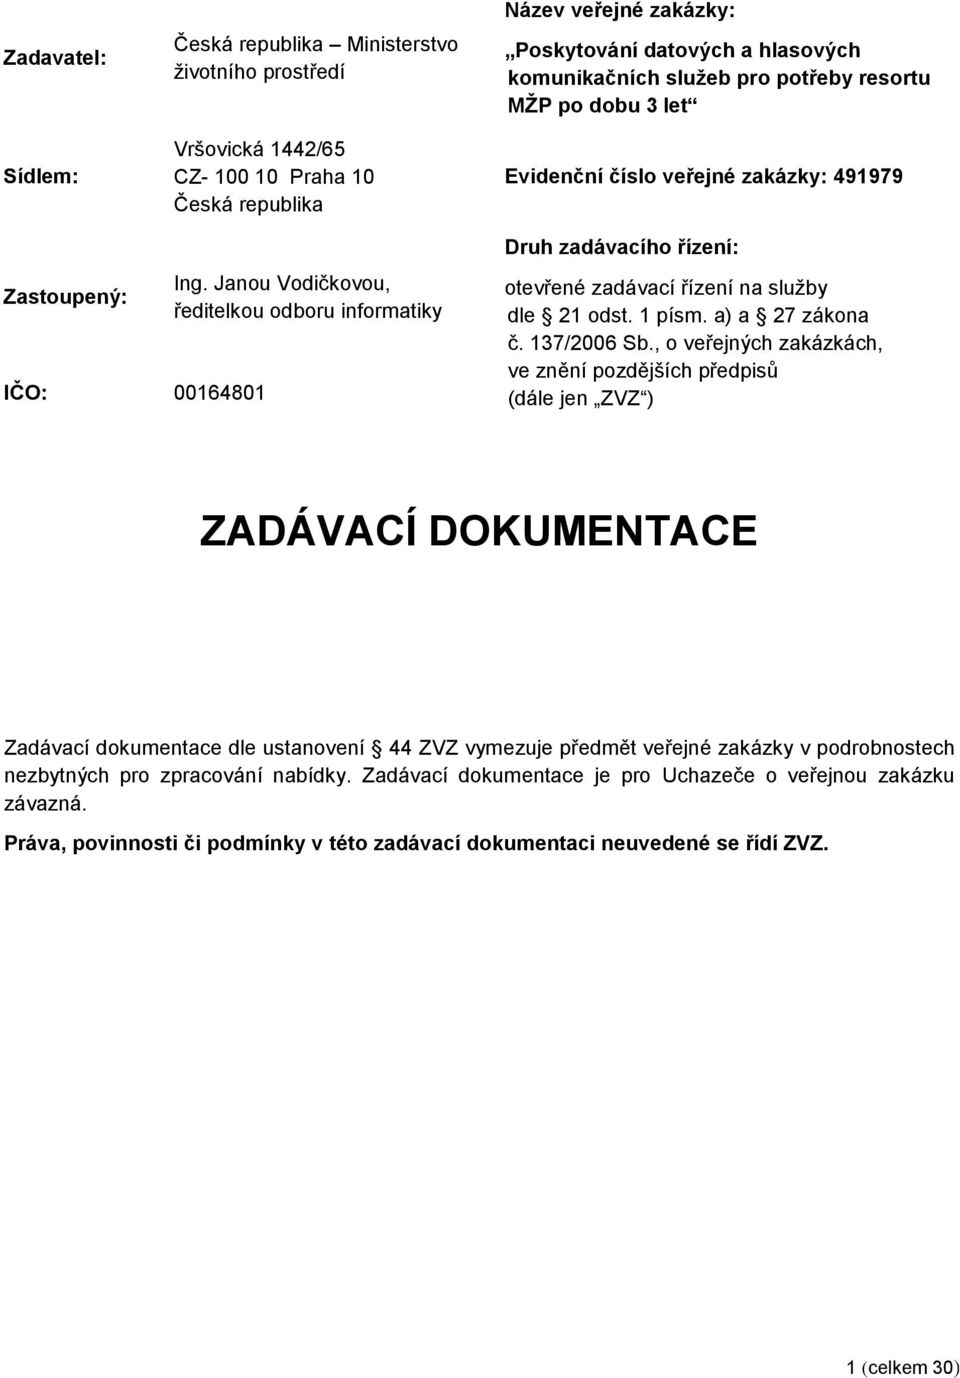 Janou Vodičkovou, ředitelkou odboru informatiky Druh zadávacího řízení: otevřené zadávací řízení na služby dle 21 odst. 1 písm. a) a 27 zákona č. 137/2006 Sb.